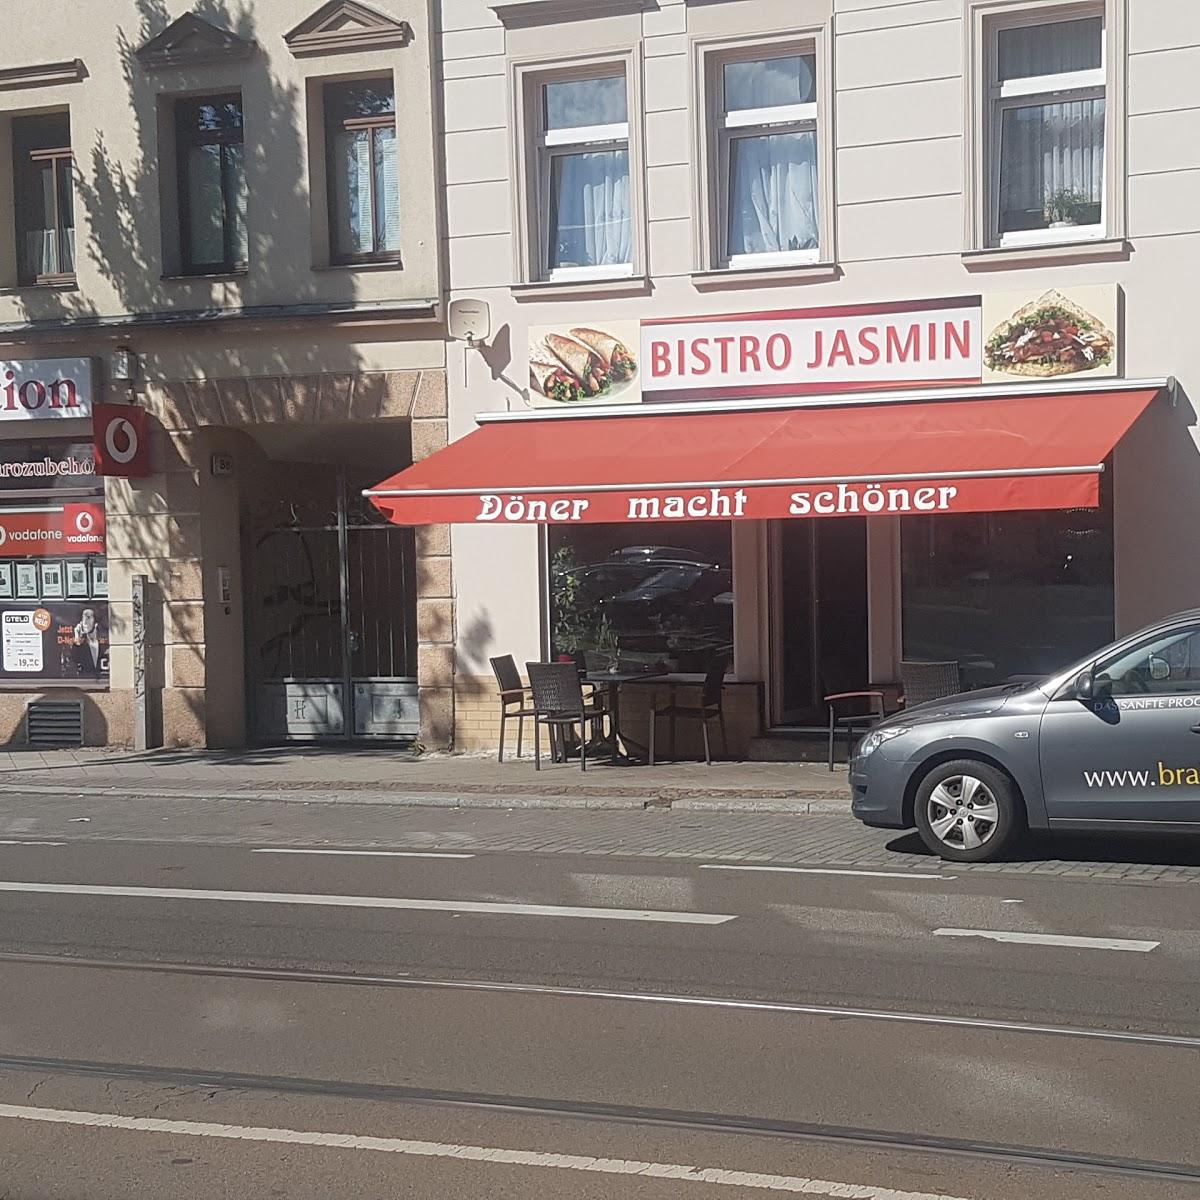 Restaurant "Bistro Jasmin" in Leipzig